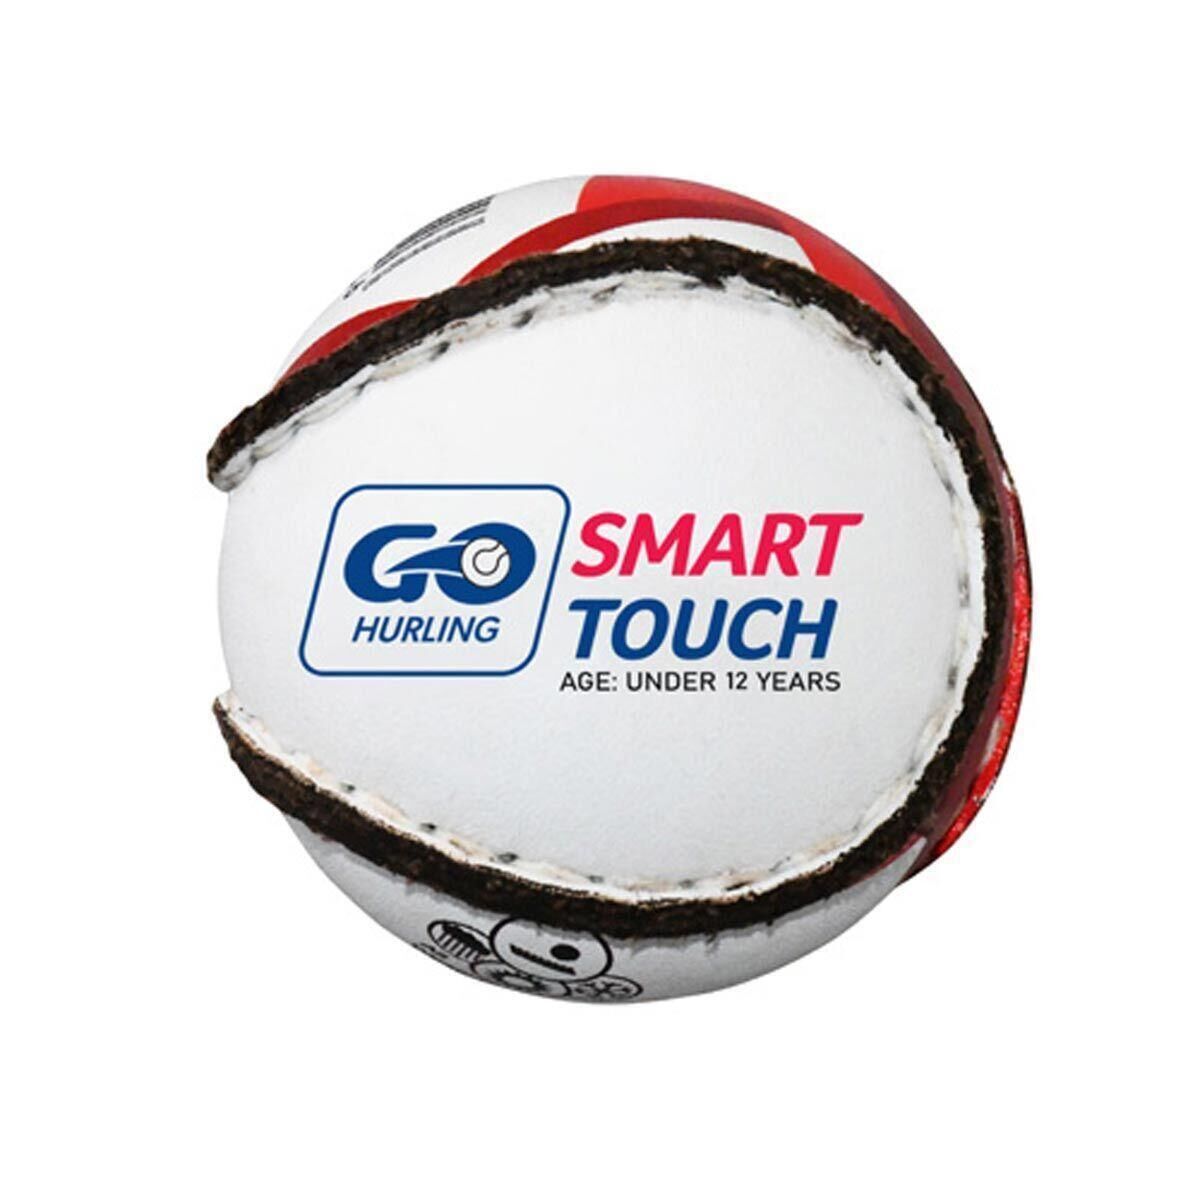 MURPHYS Smart Touch Hurling Sliotar Ball (White/Red/Black)